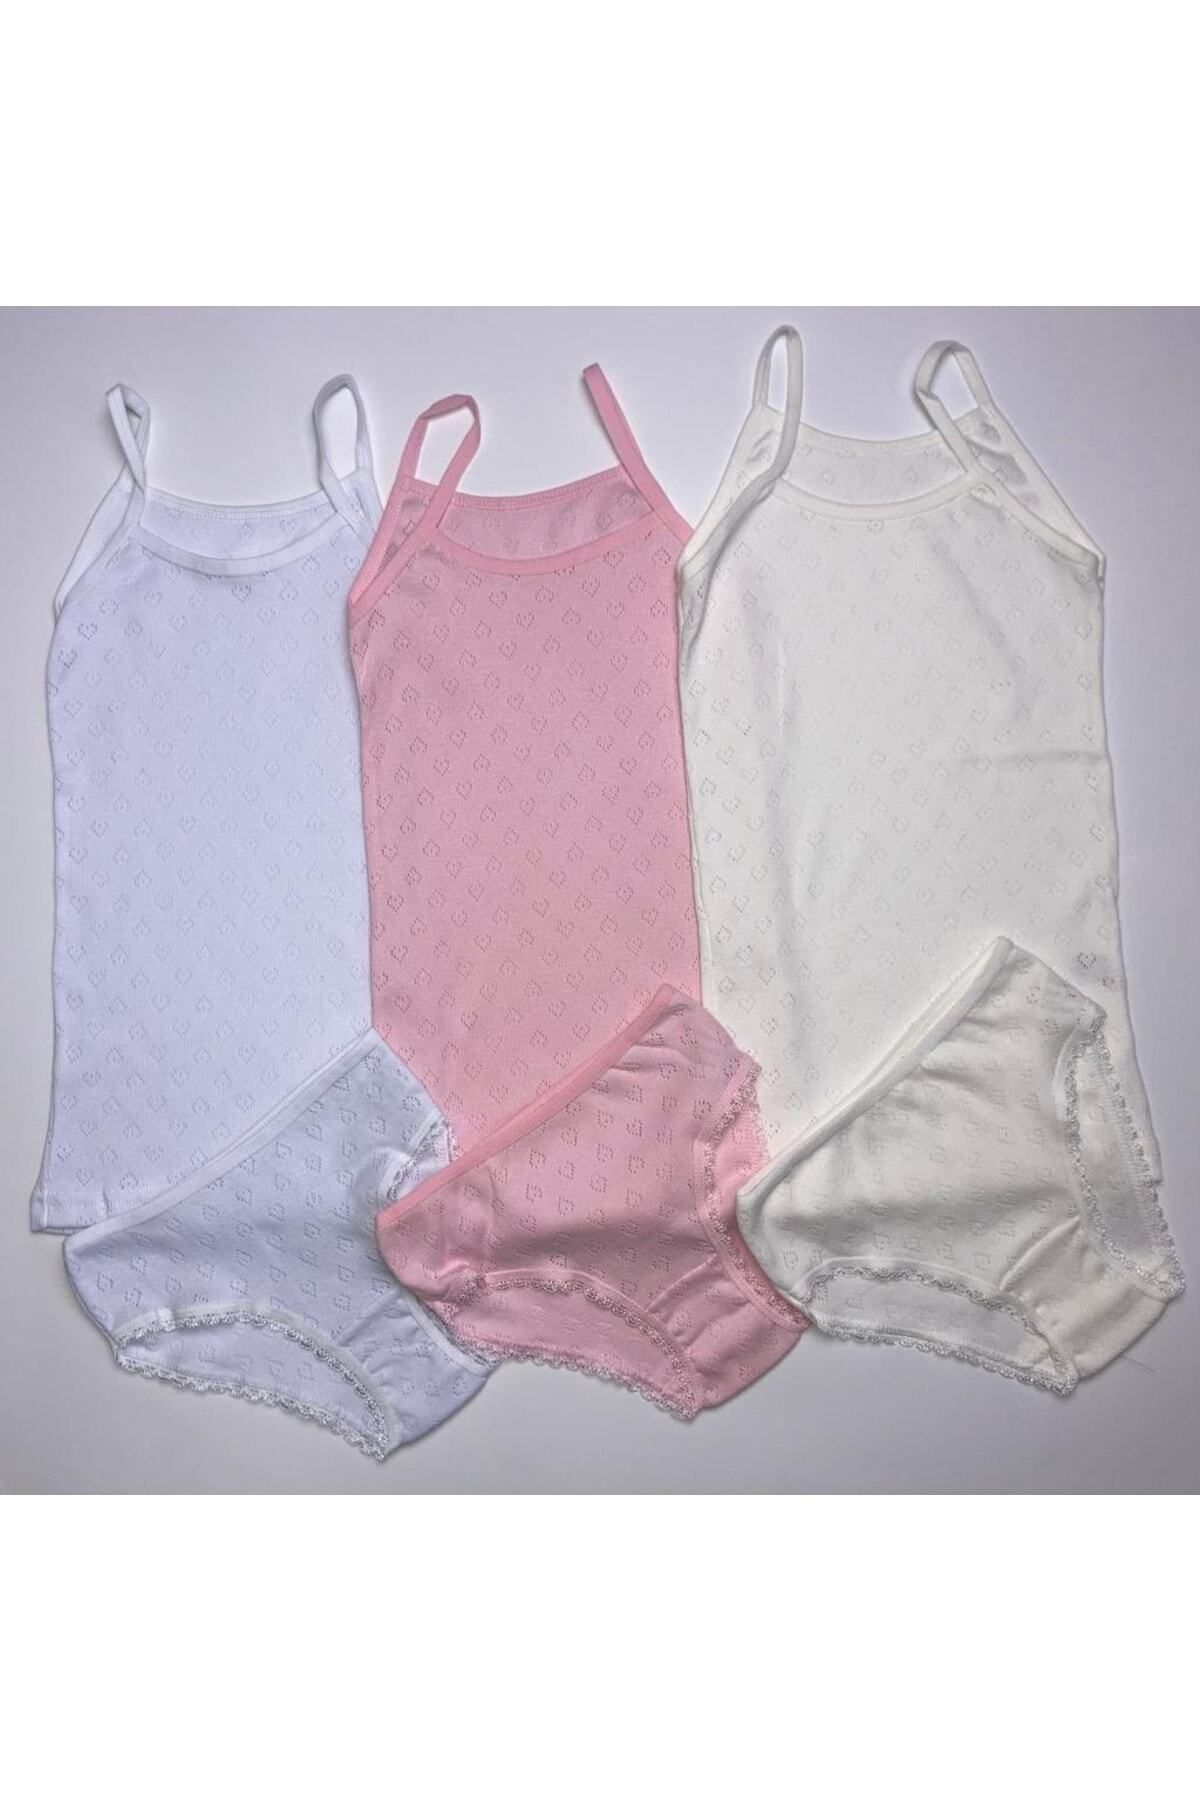 ADN Underwear Kız Çocuk 3'lü Karışık Renkli Jakarlı Takım Ip Askılı Atlet, Slip Külot Takım Iç Giyim jkrlıtkm